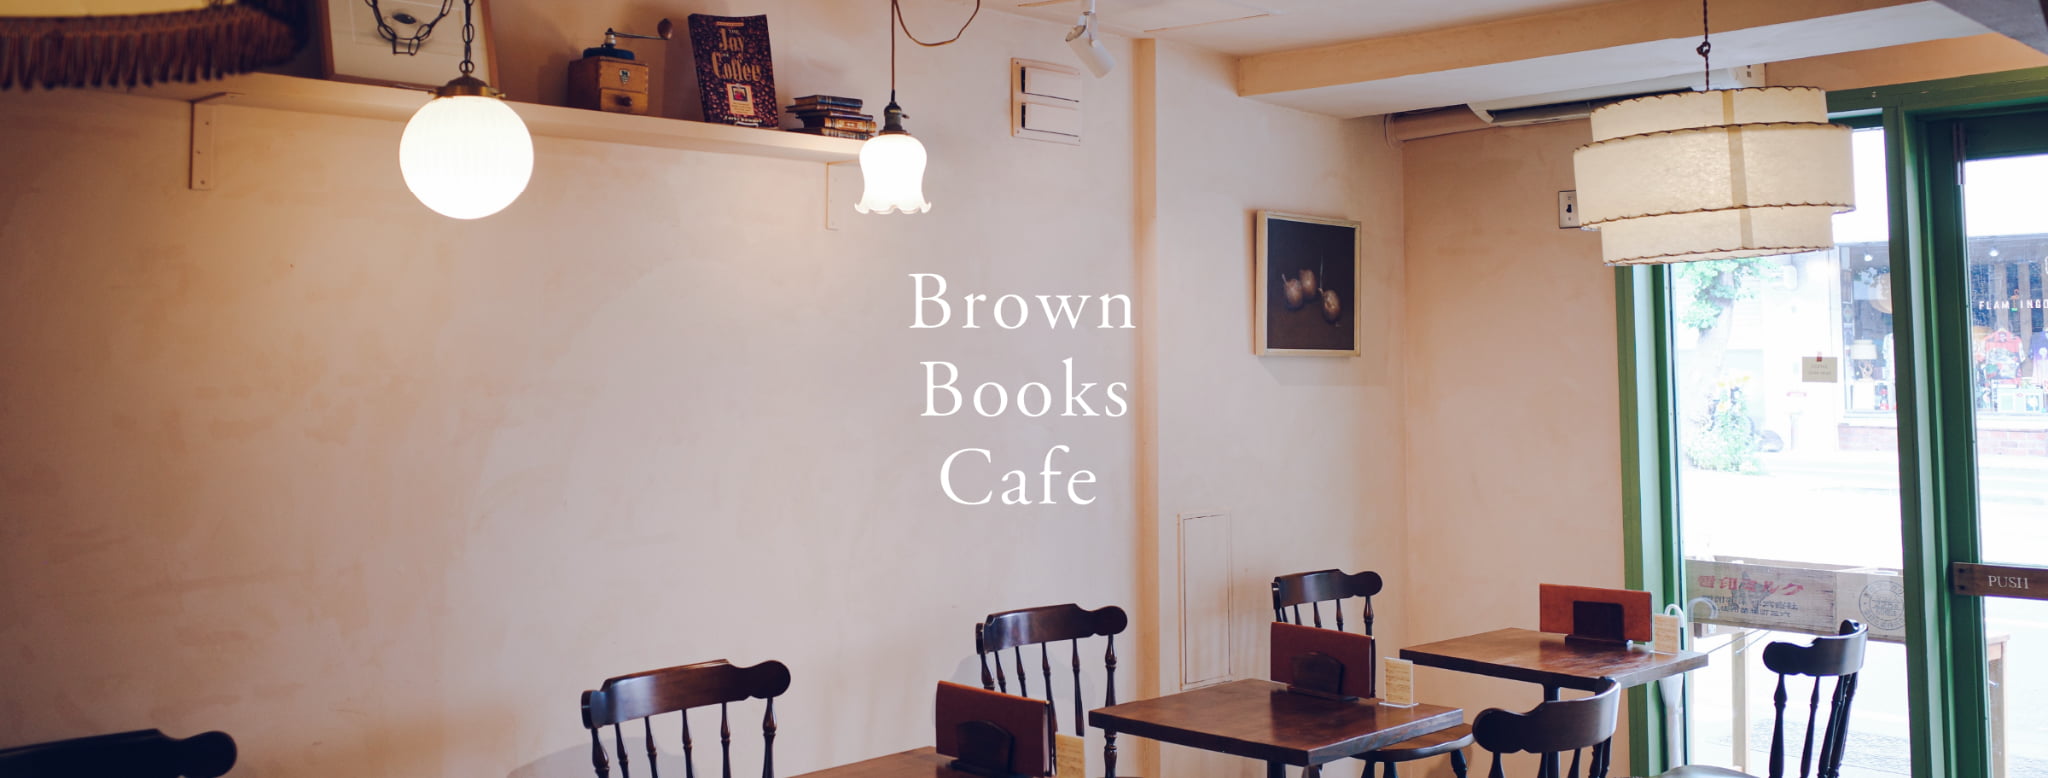 BrownBooksCafe